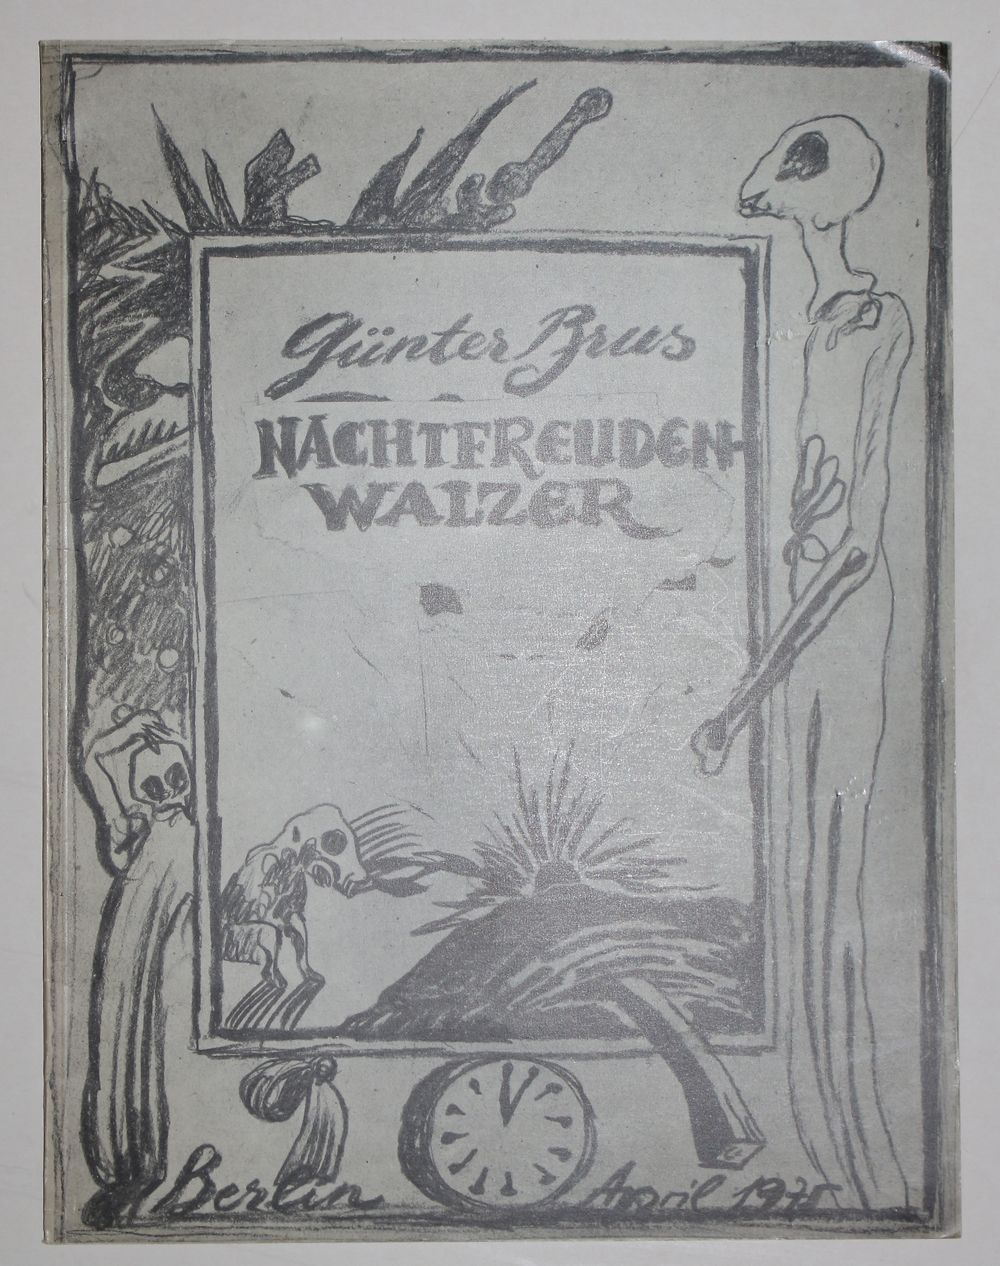 Brus,G. Collection de 10 catalogues sur Günter Brus. Divers. Formats. Obrosch.